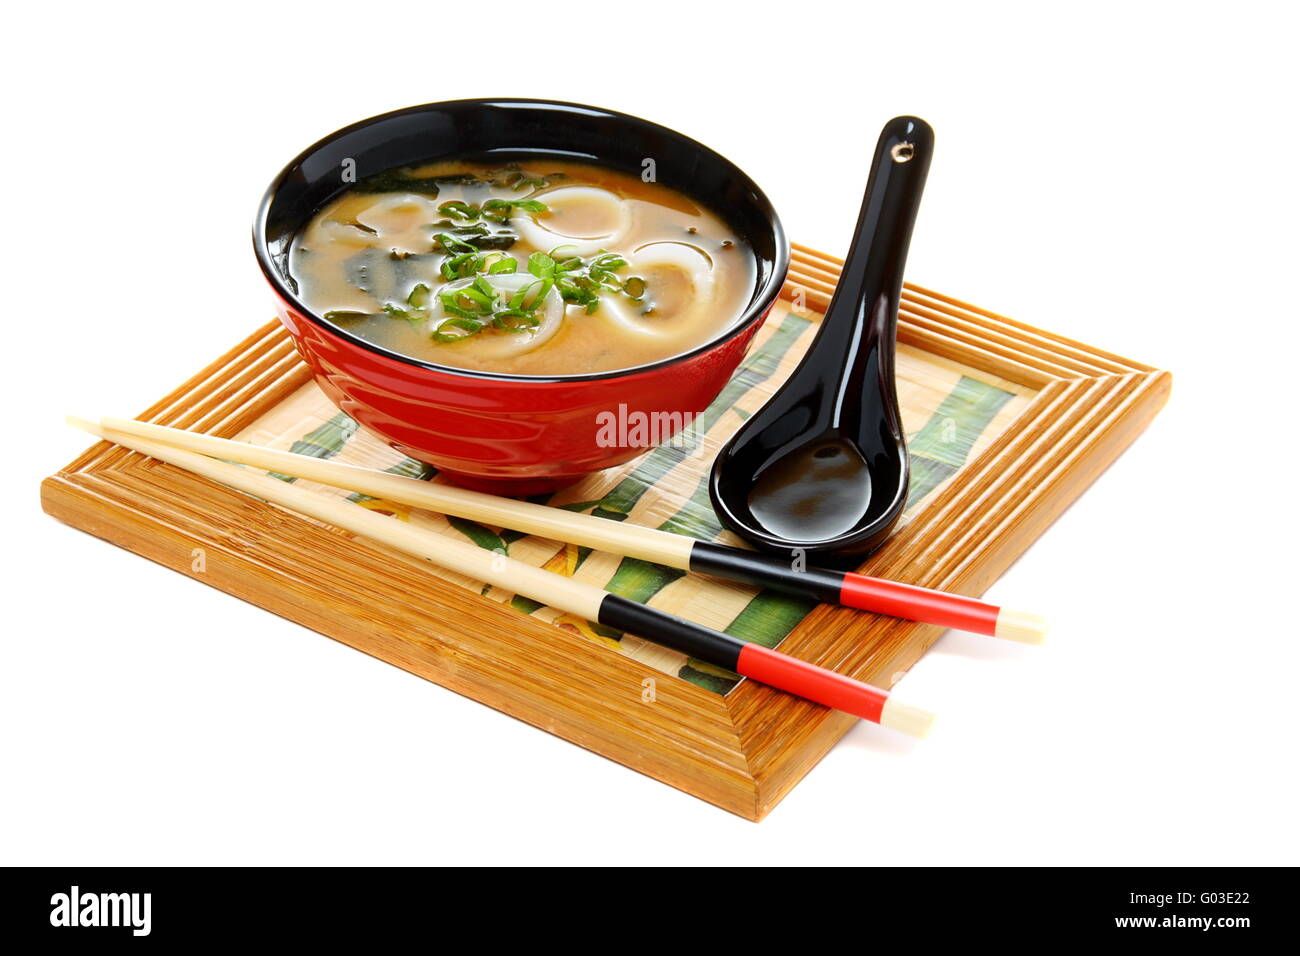 La soupe miso avec de l'oignon vert sur fond blanc. Banque D'Images